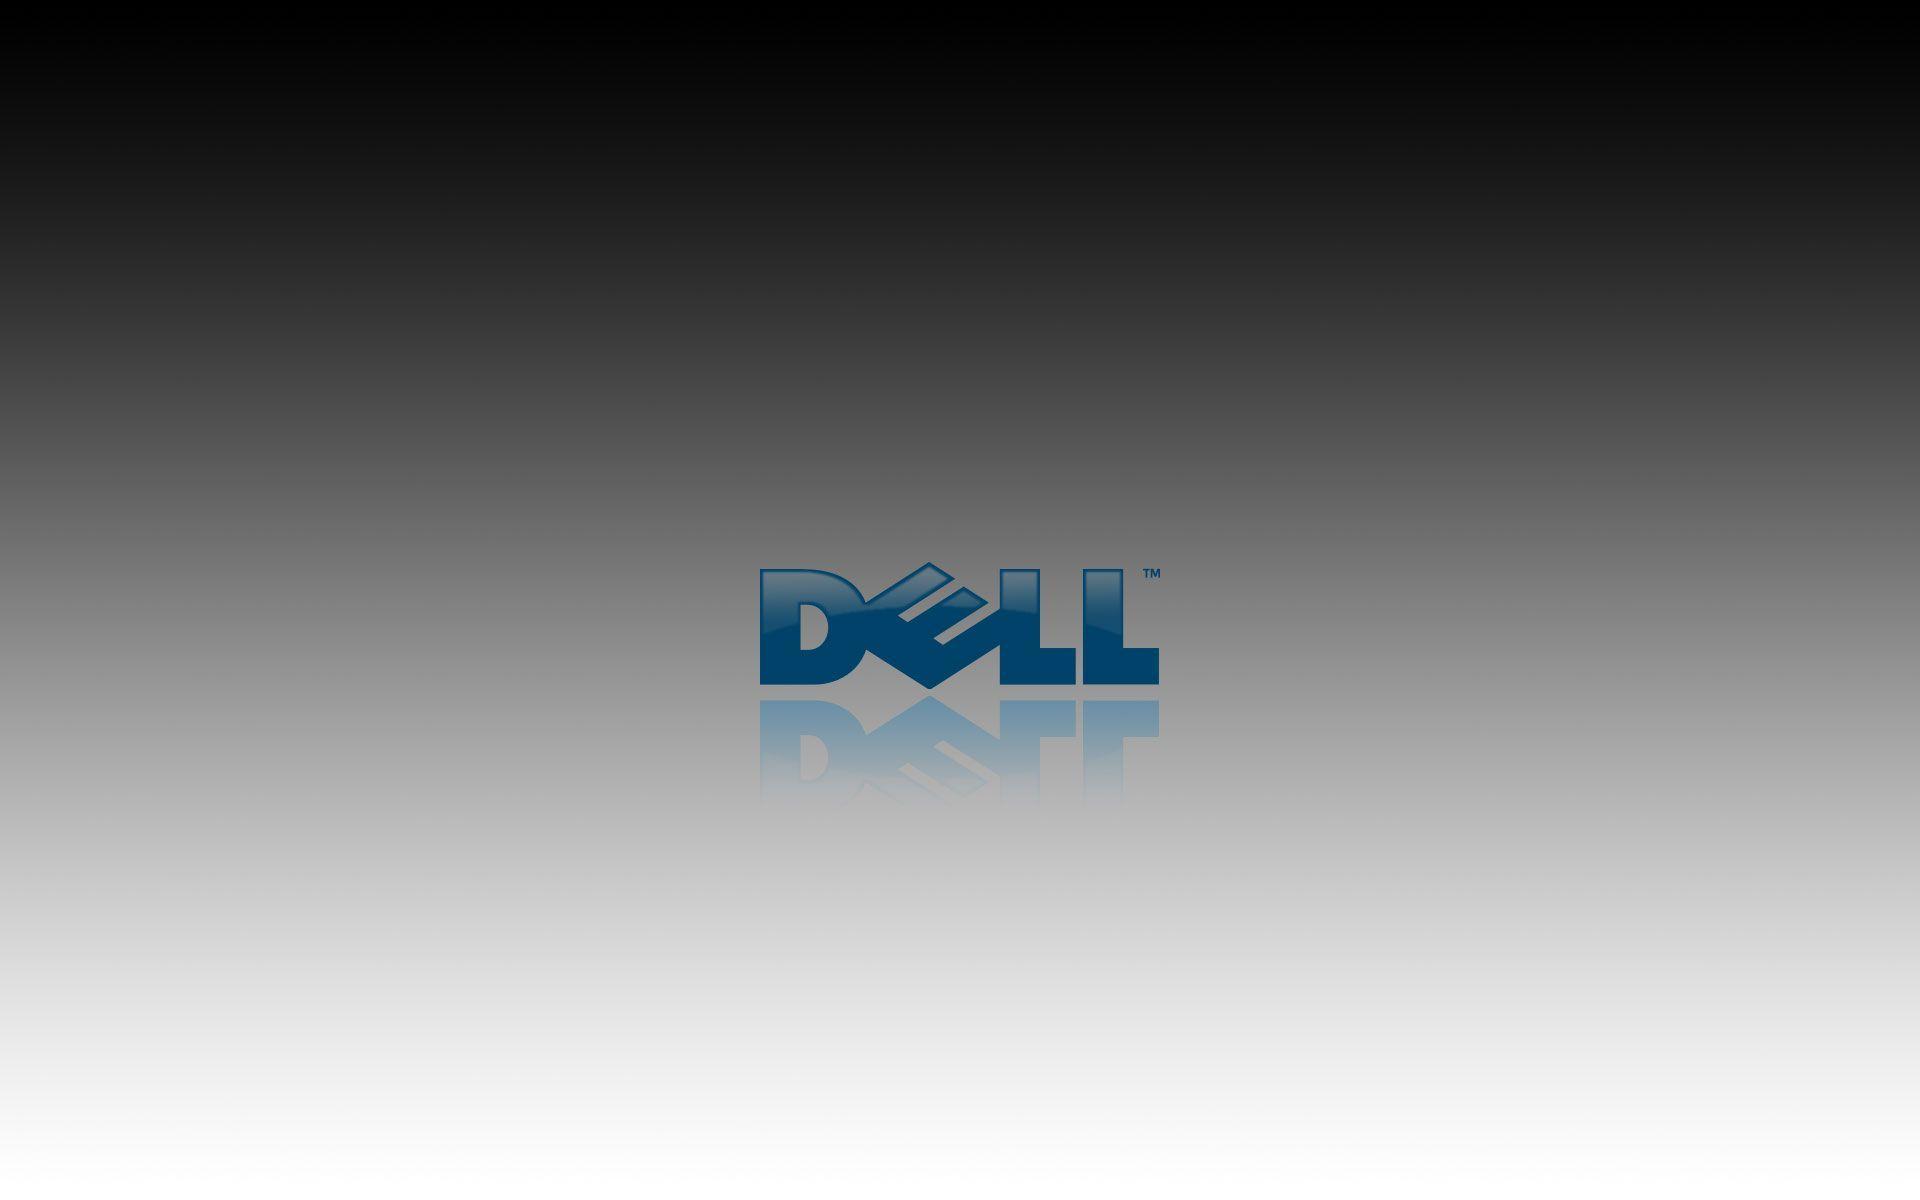 Dell logo wallpaper